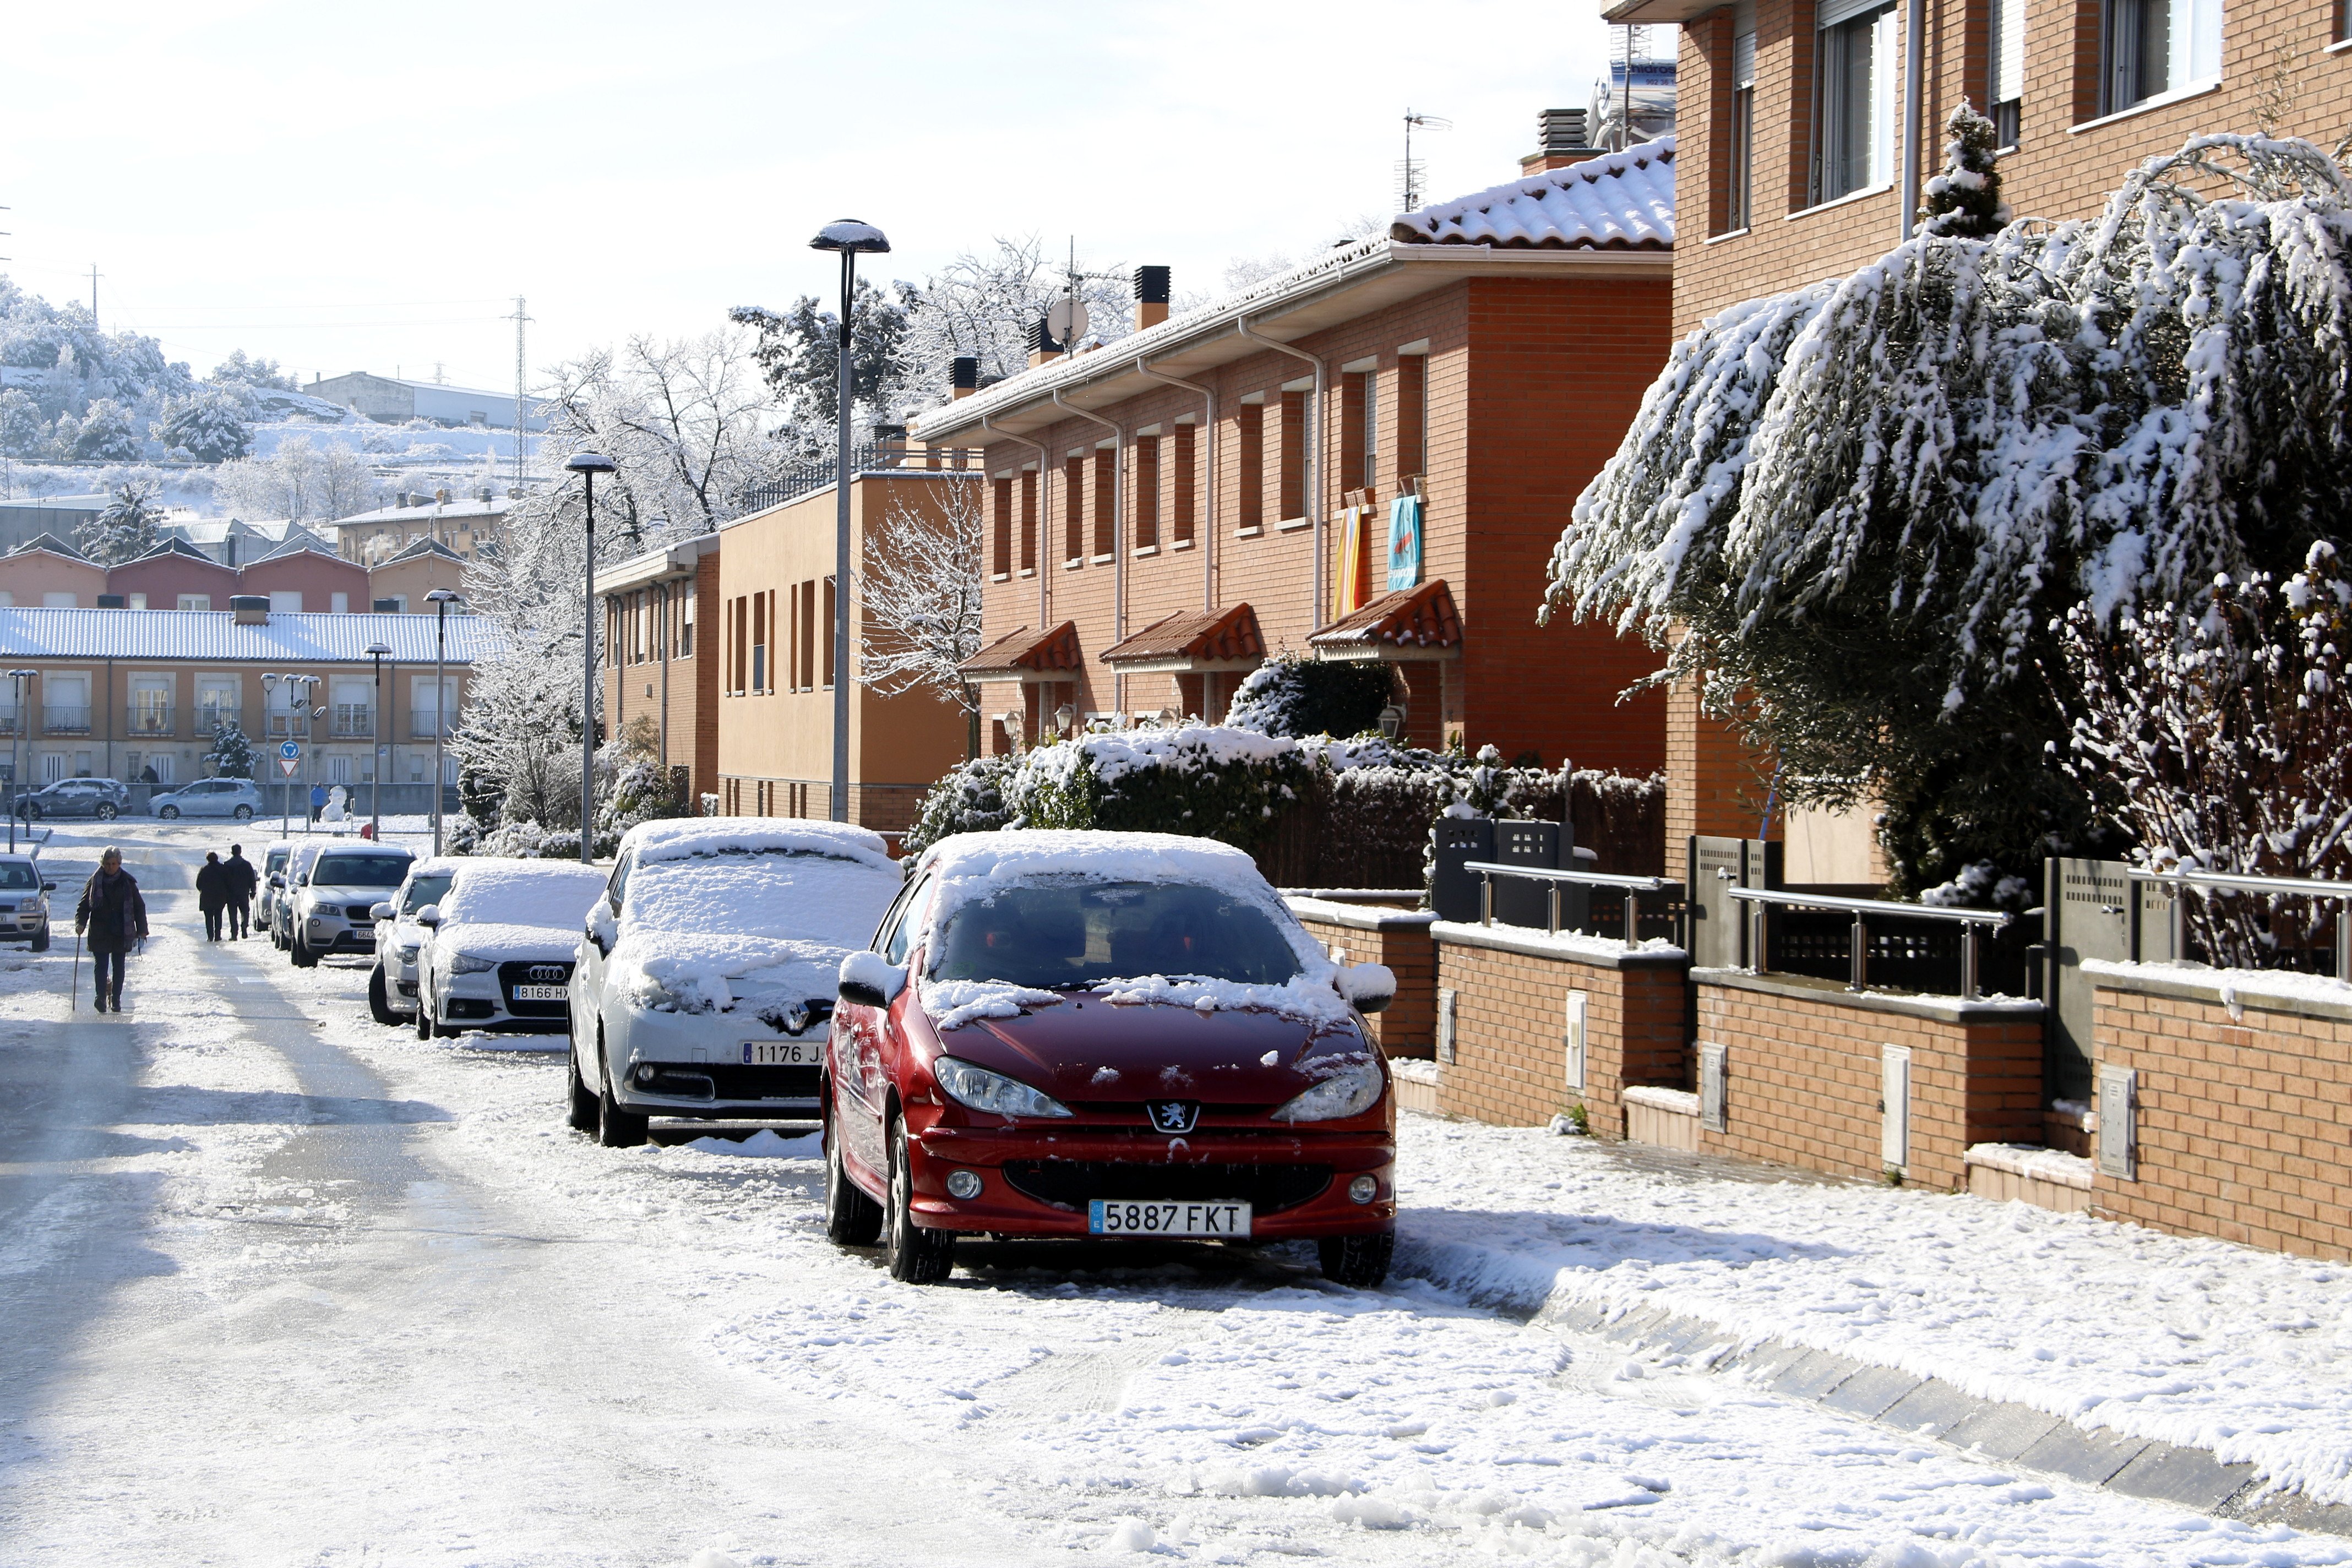 170 alumnes, sense transport escolar per la neu